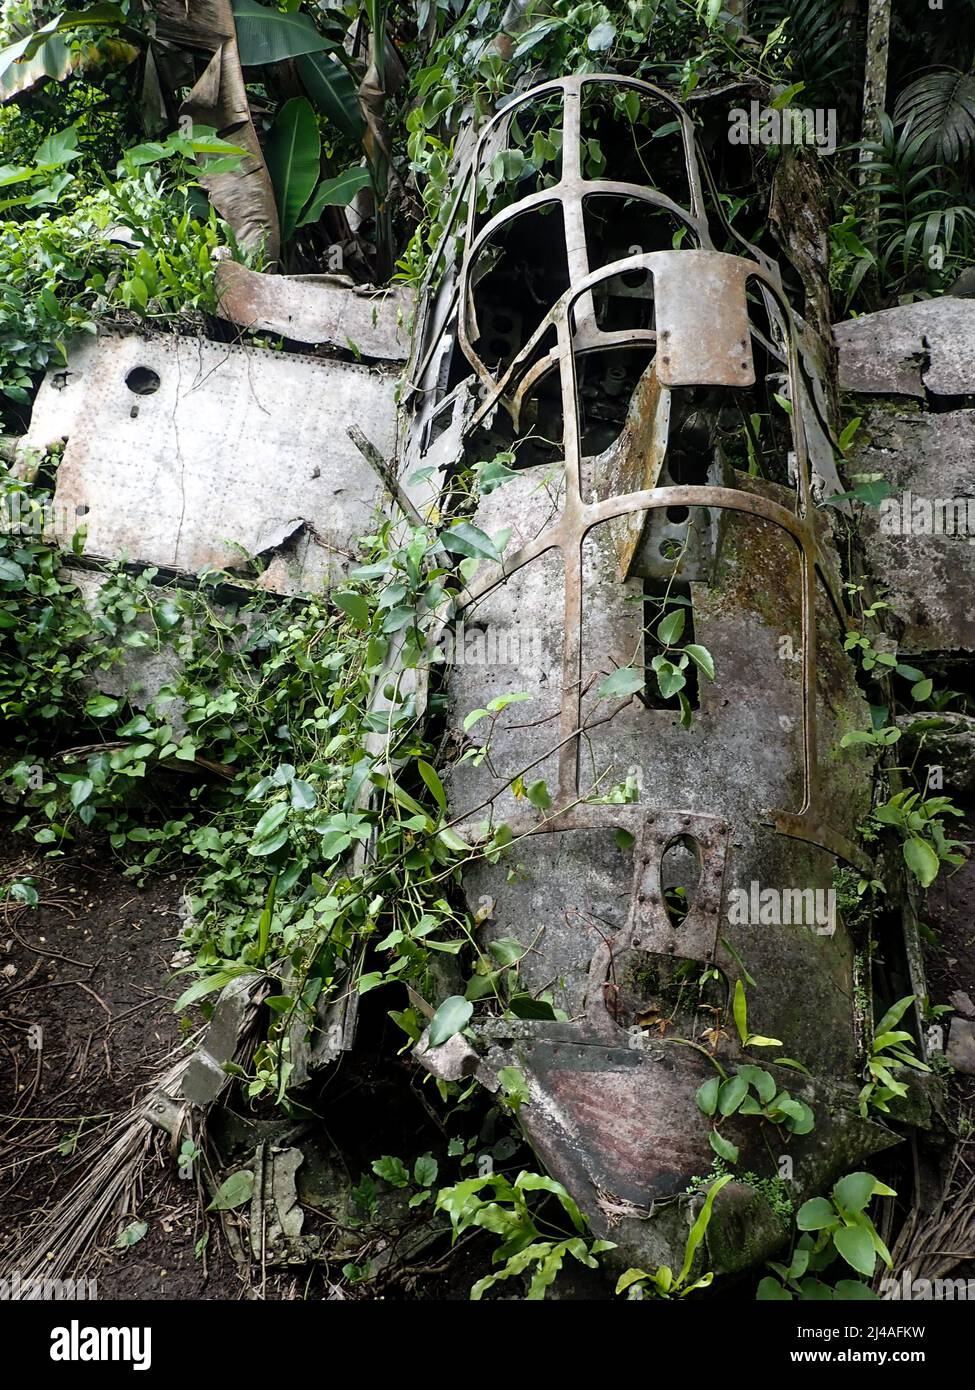 Crashed Japanese Zero fighter plane in Peleliu, Palau Stock Photo